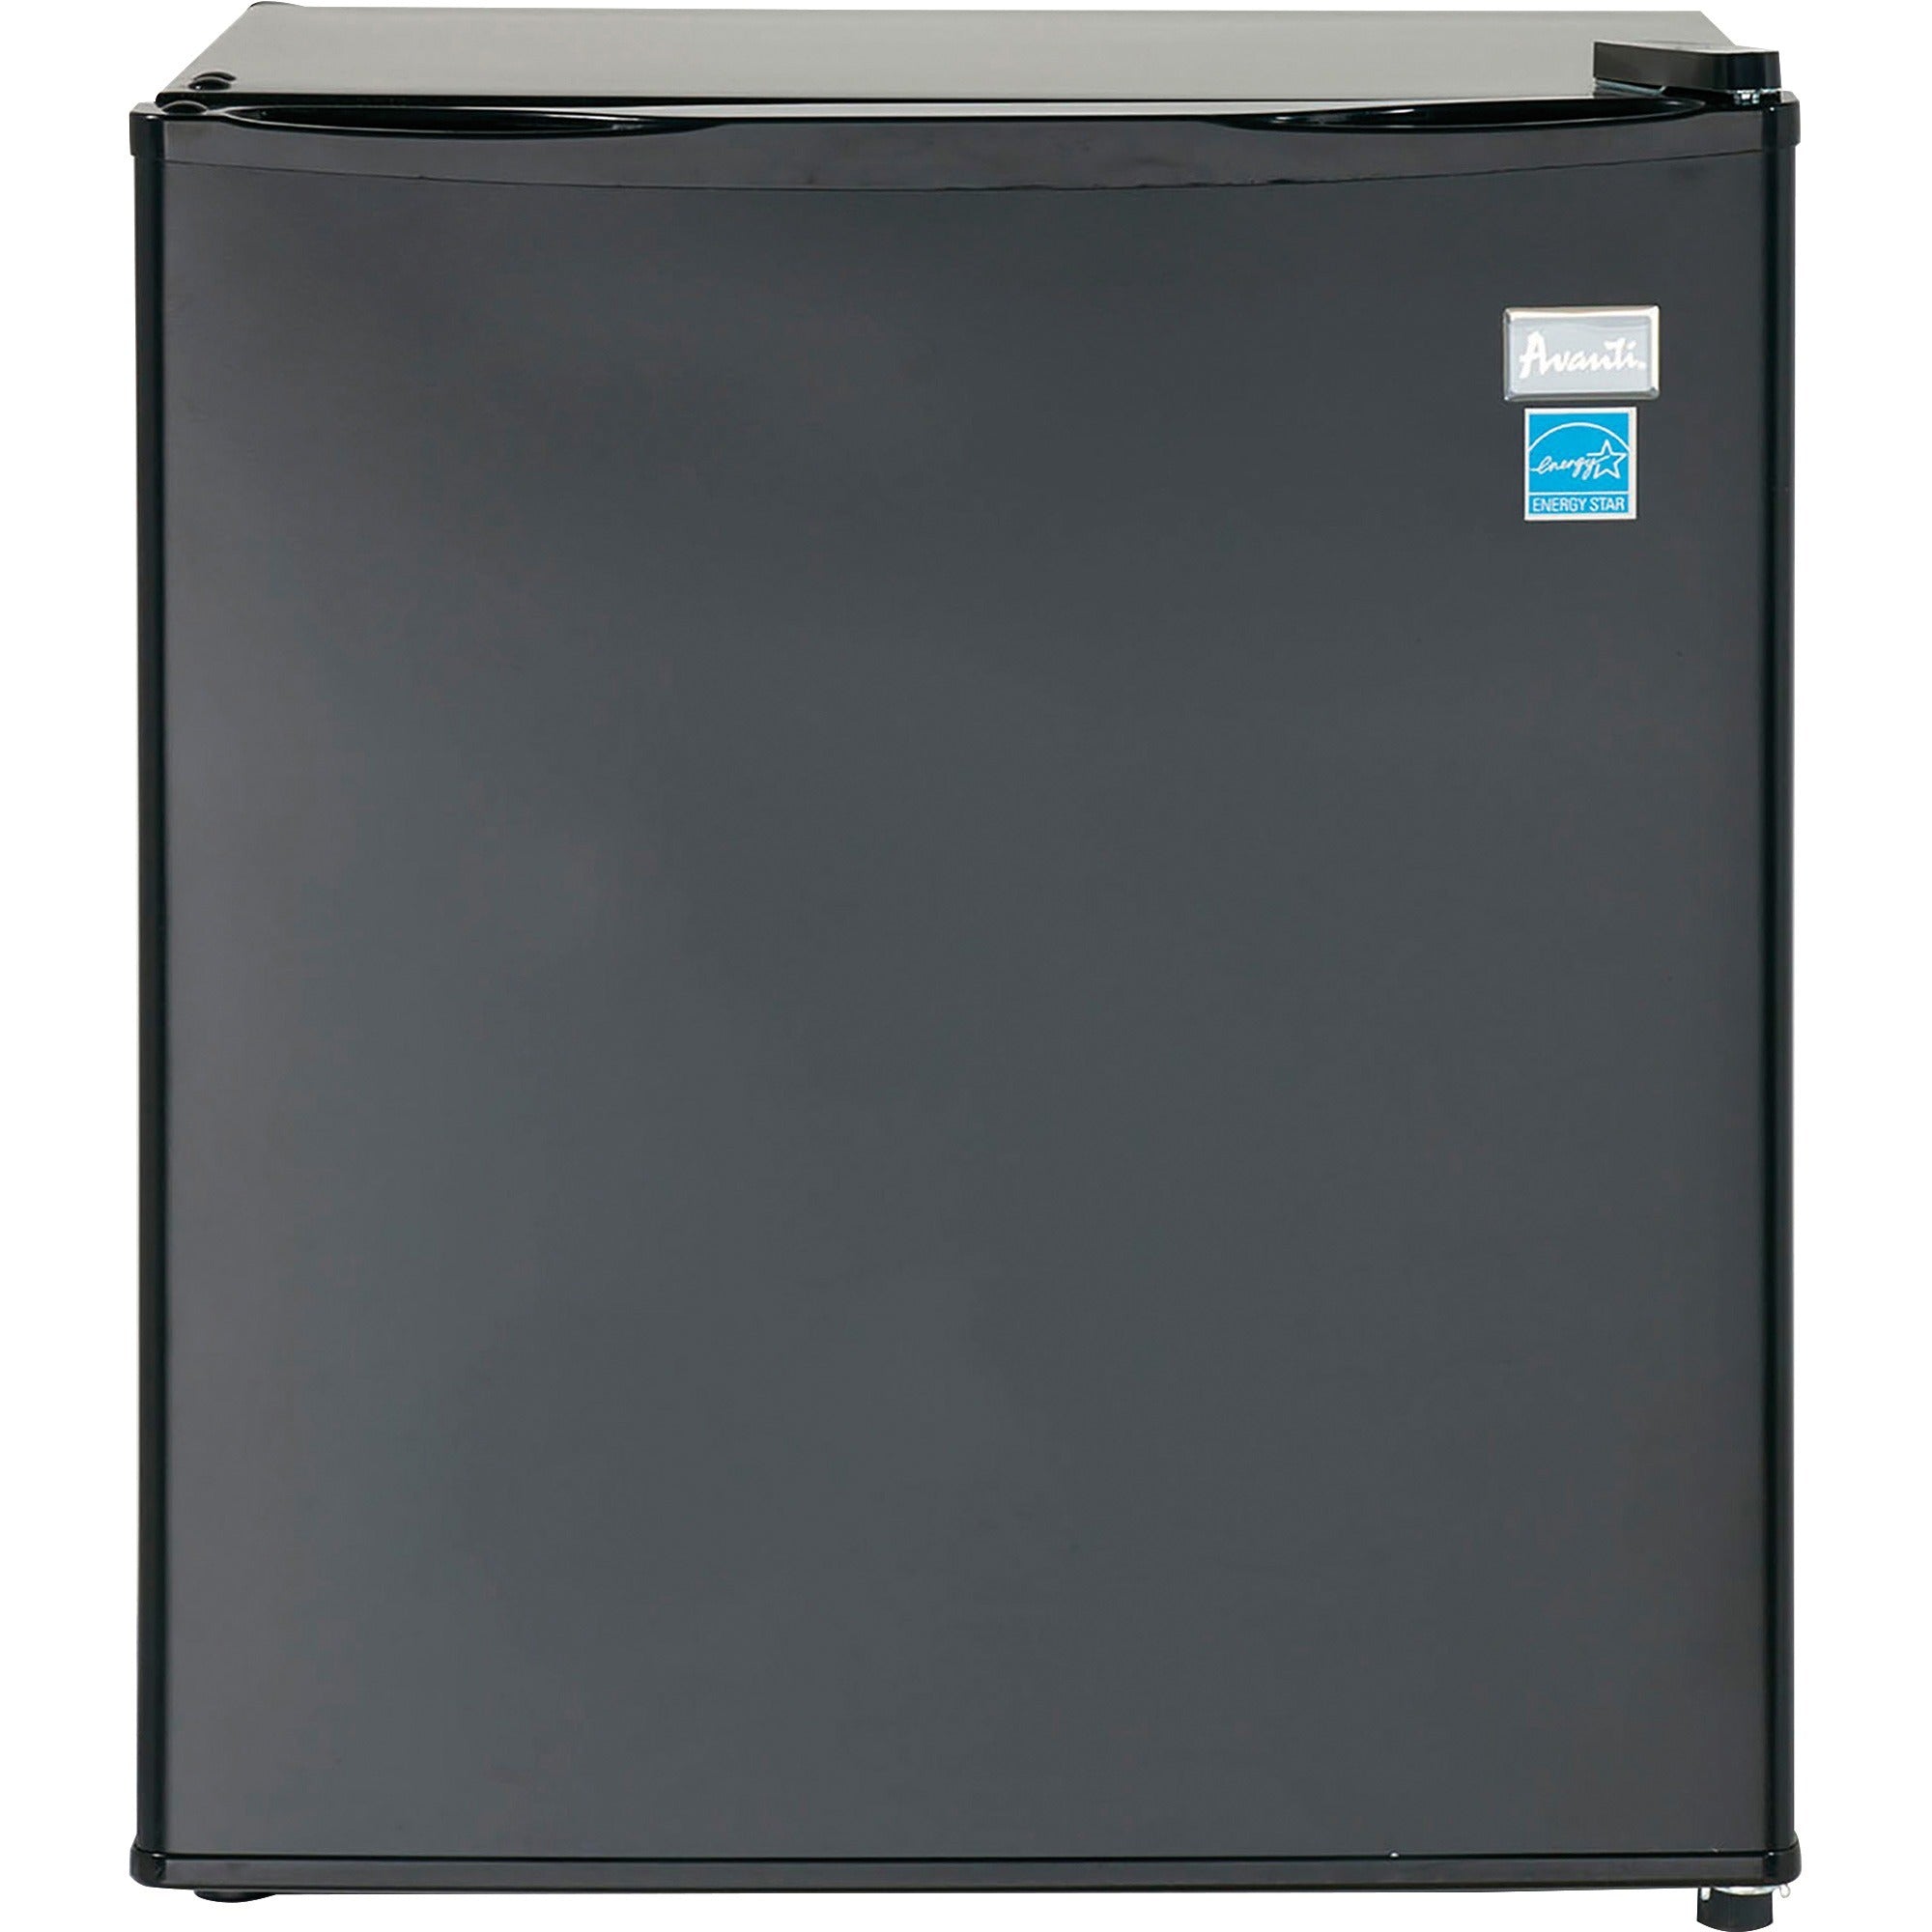 avanti-ar17t1b-170-cubic-foot-refrigerator-170-ft-auto-defrost-auto-defrost-reversible-170-ft-net-refrigerator-capacity-black_avaar17t1b - 1